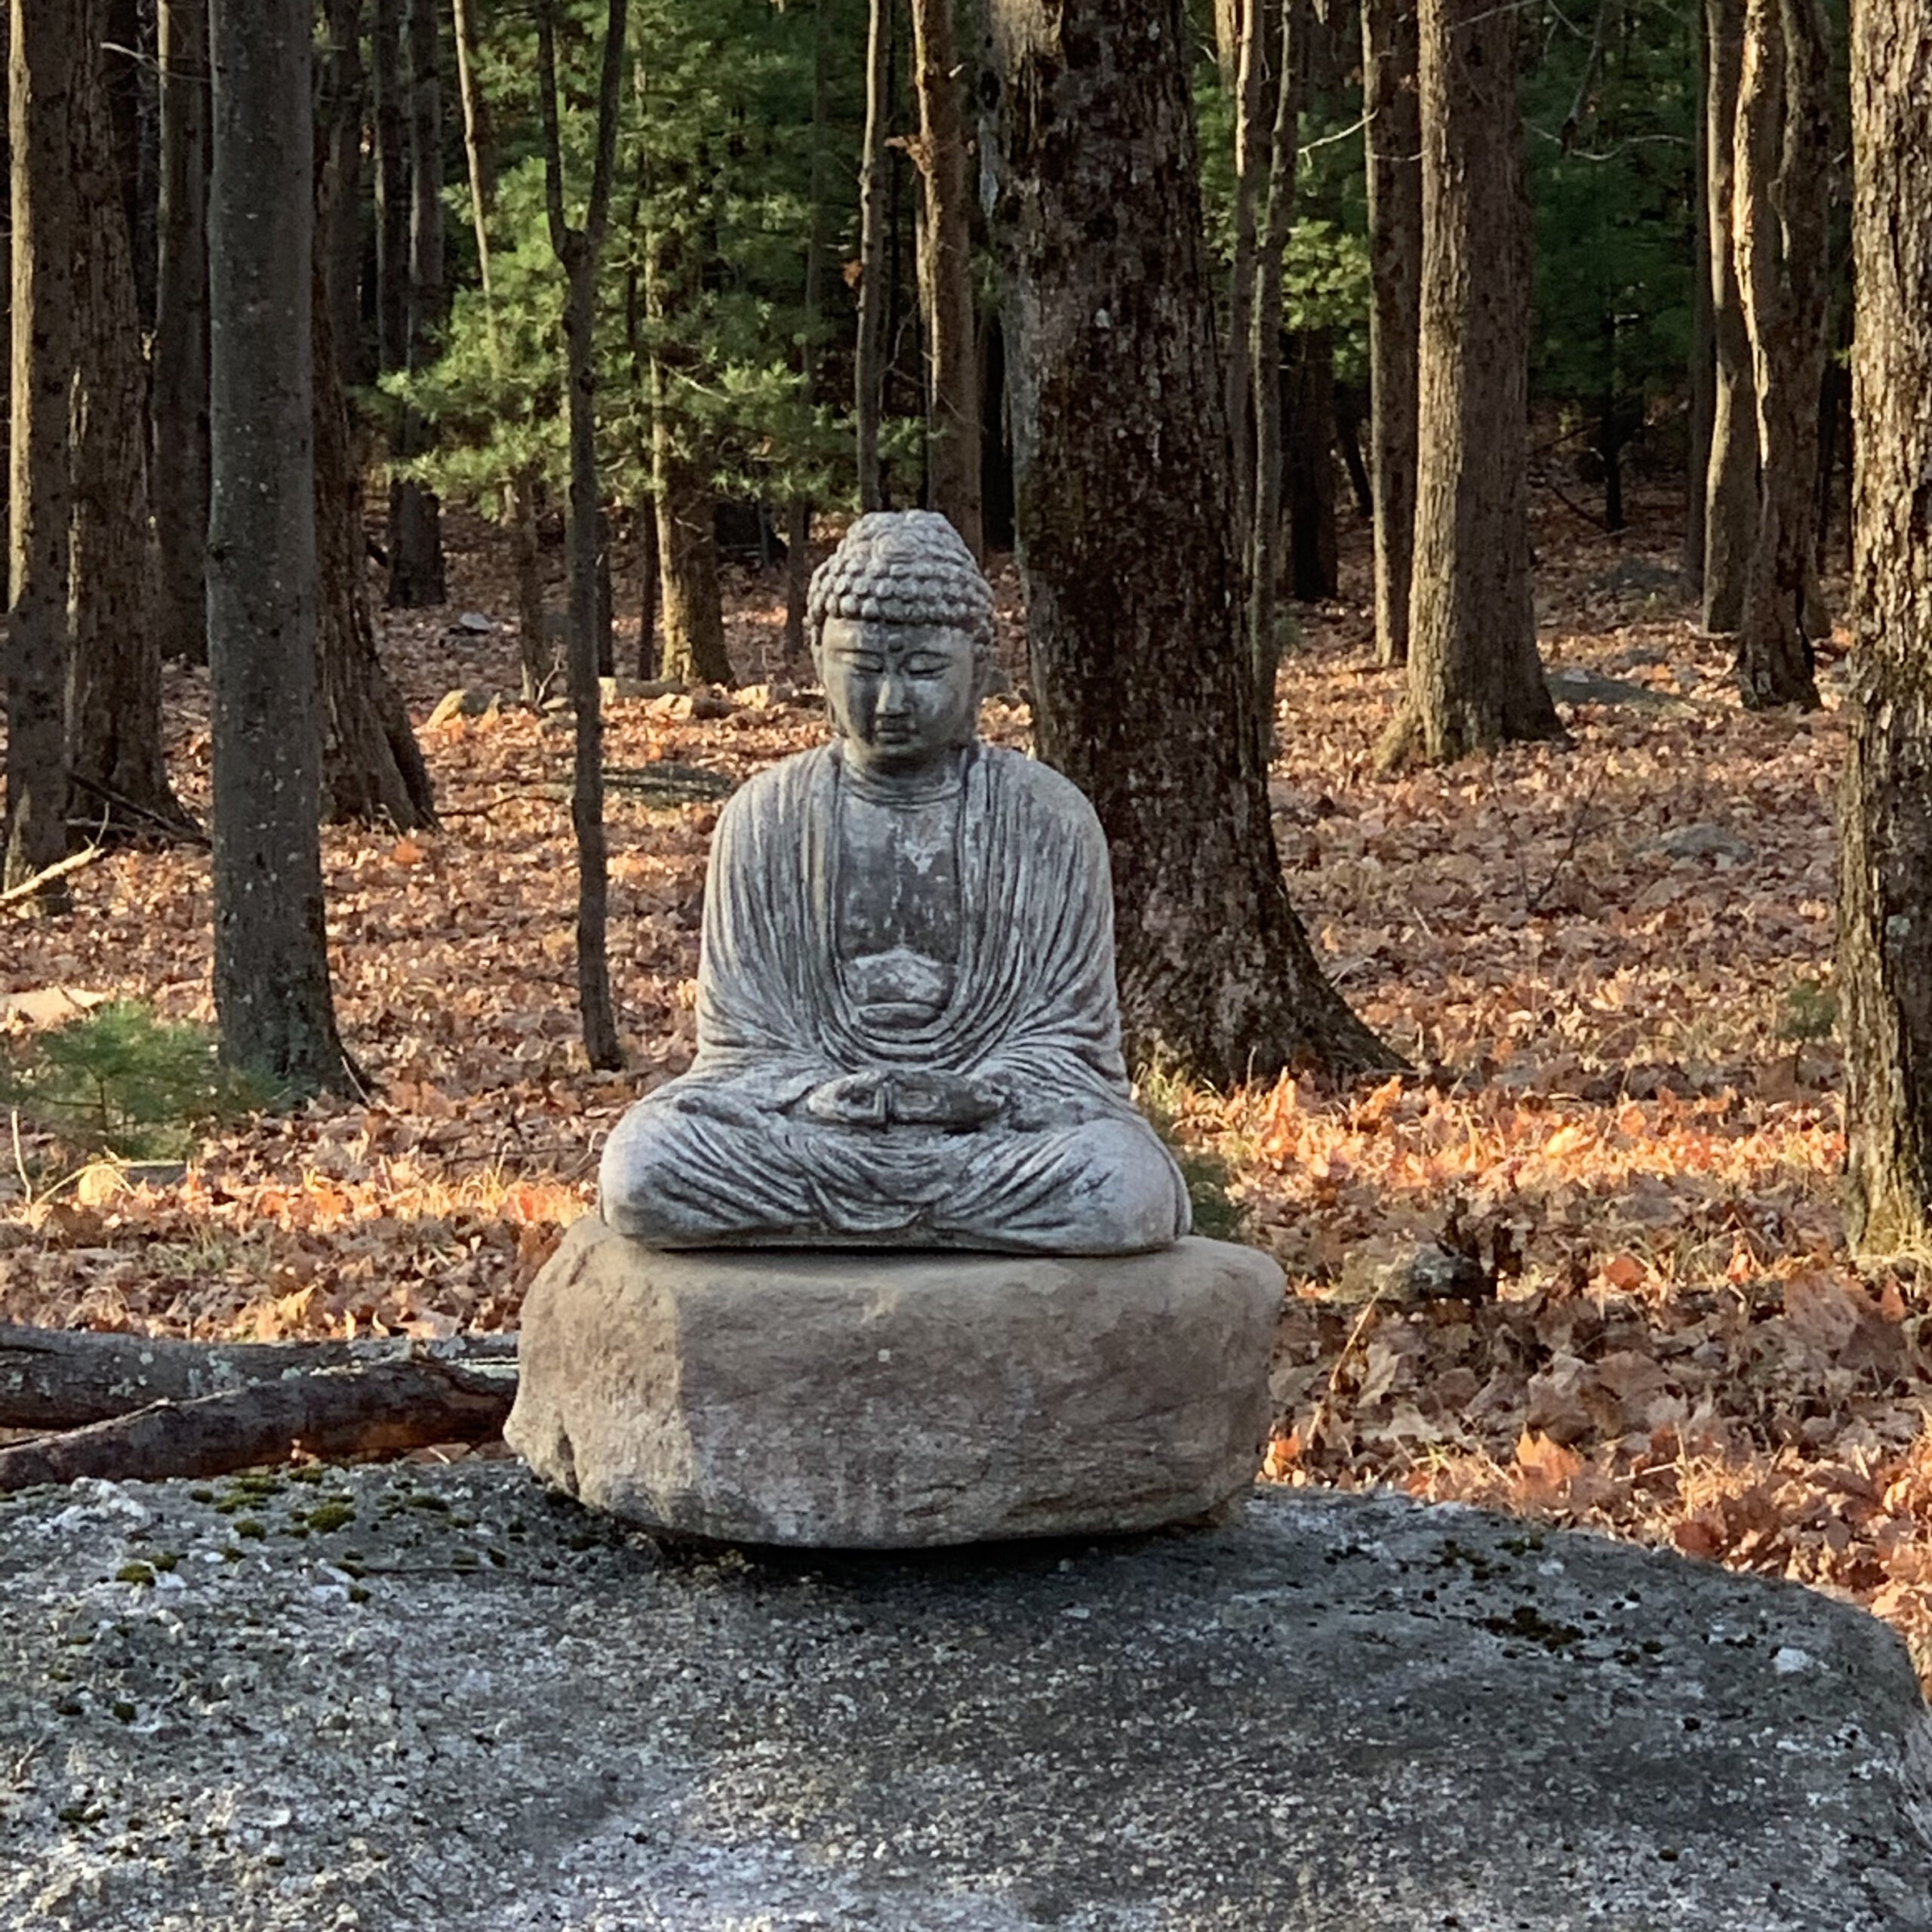 A stone statue of a sitting Buddha among fall leaves